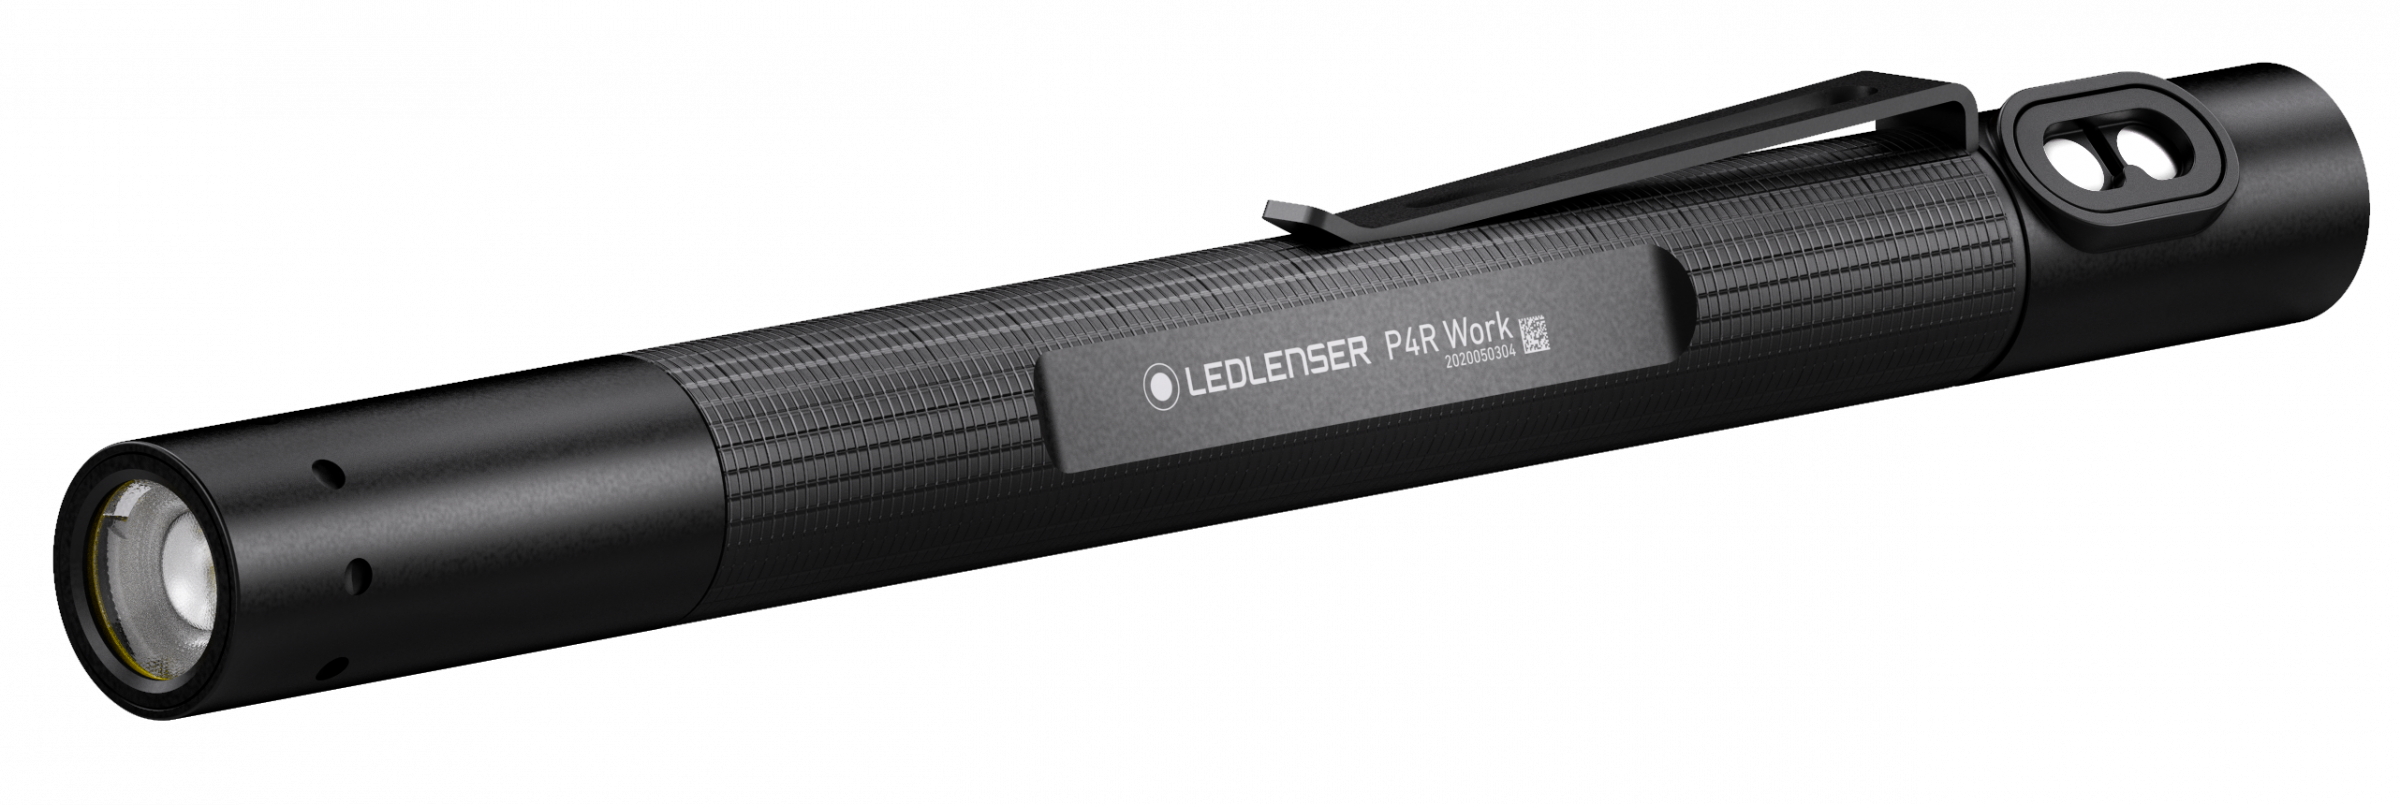 Led Lenser Penlight P4R Work inkl. Li-ion Akku